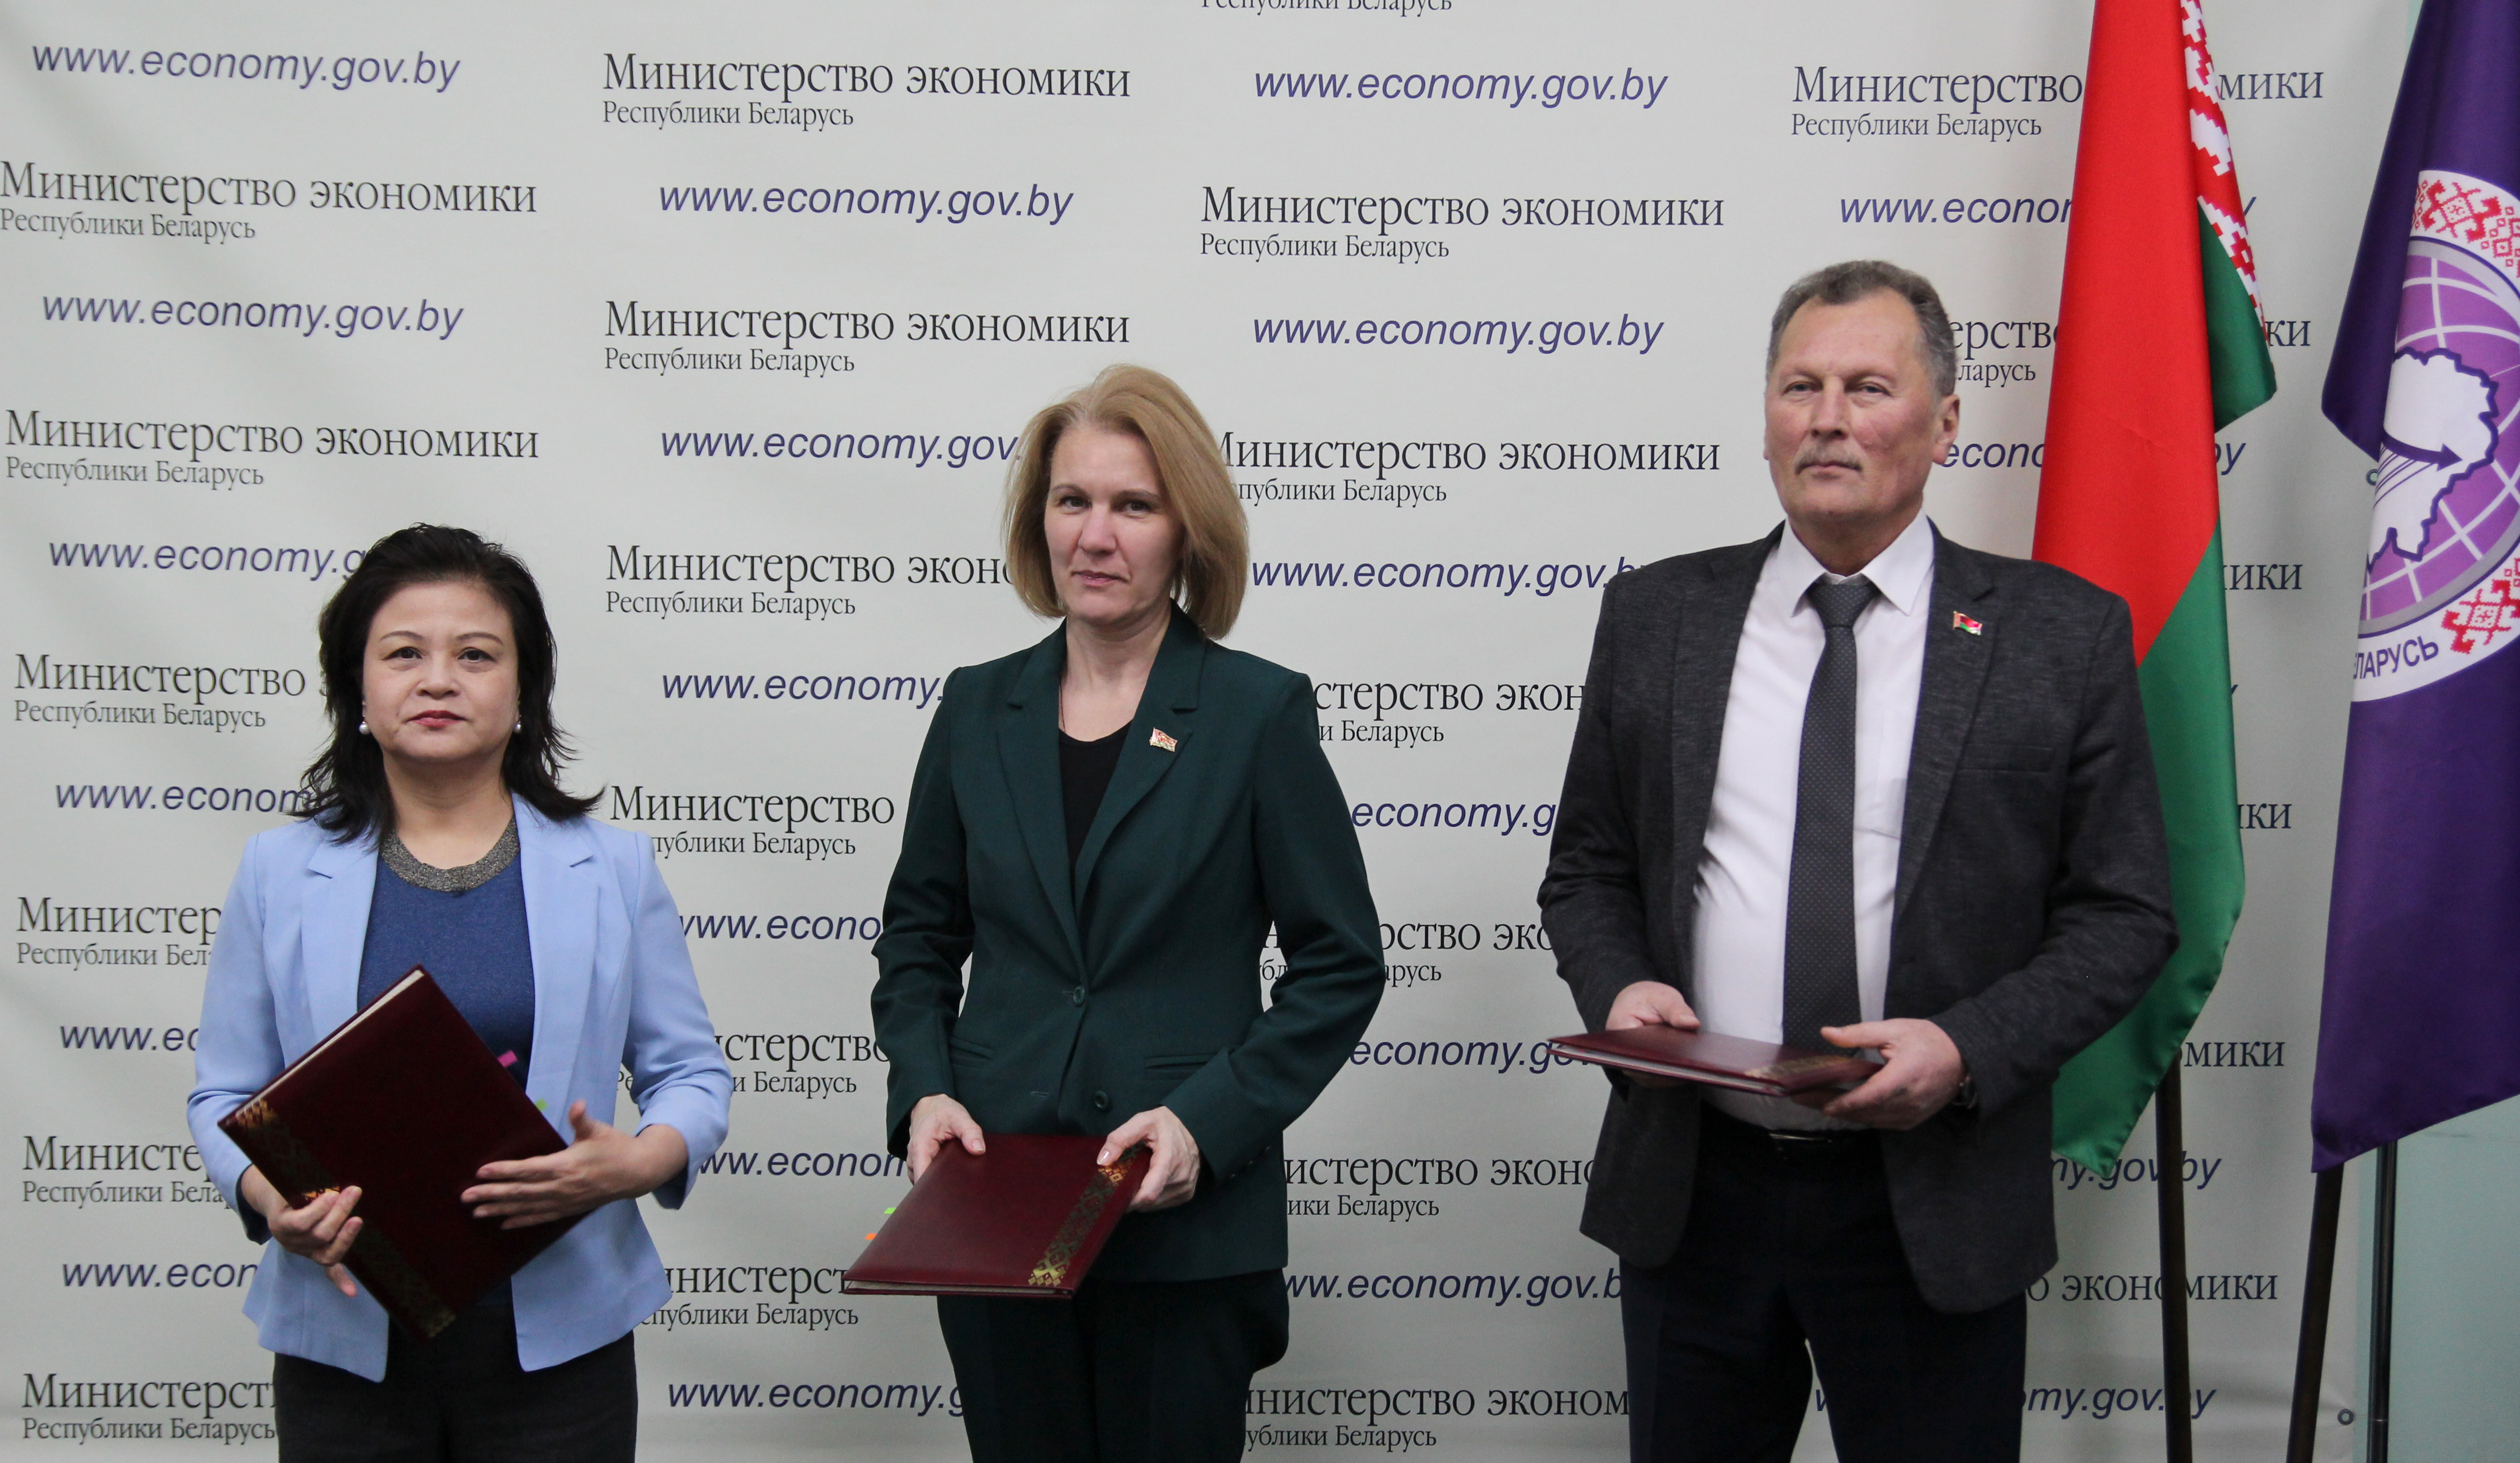 Подписаны документы по поставке досмотрового оборудования для Национального аэропорта Минск